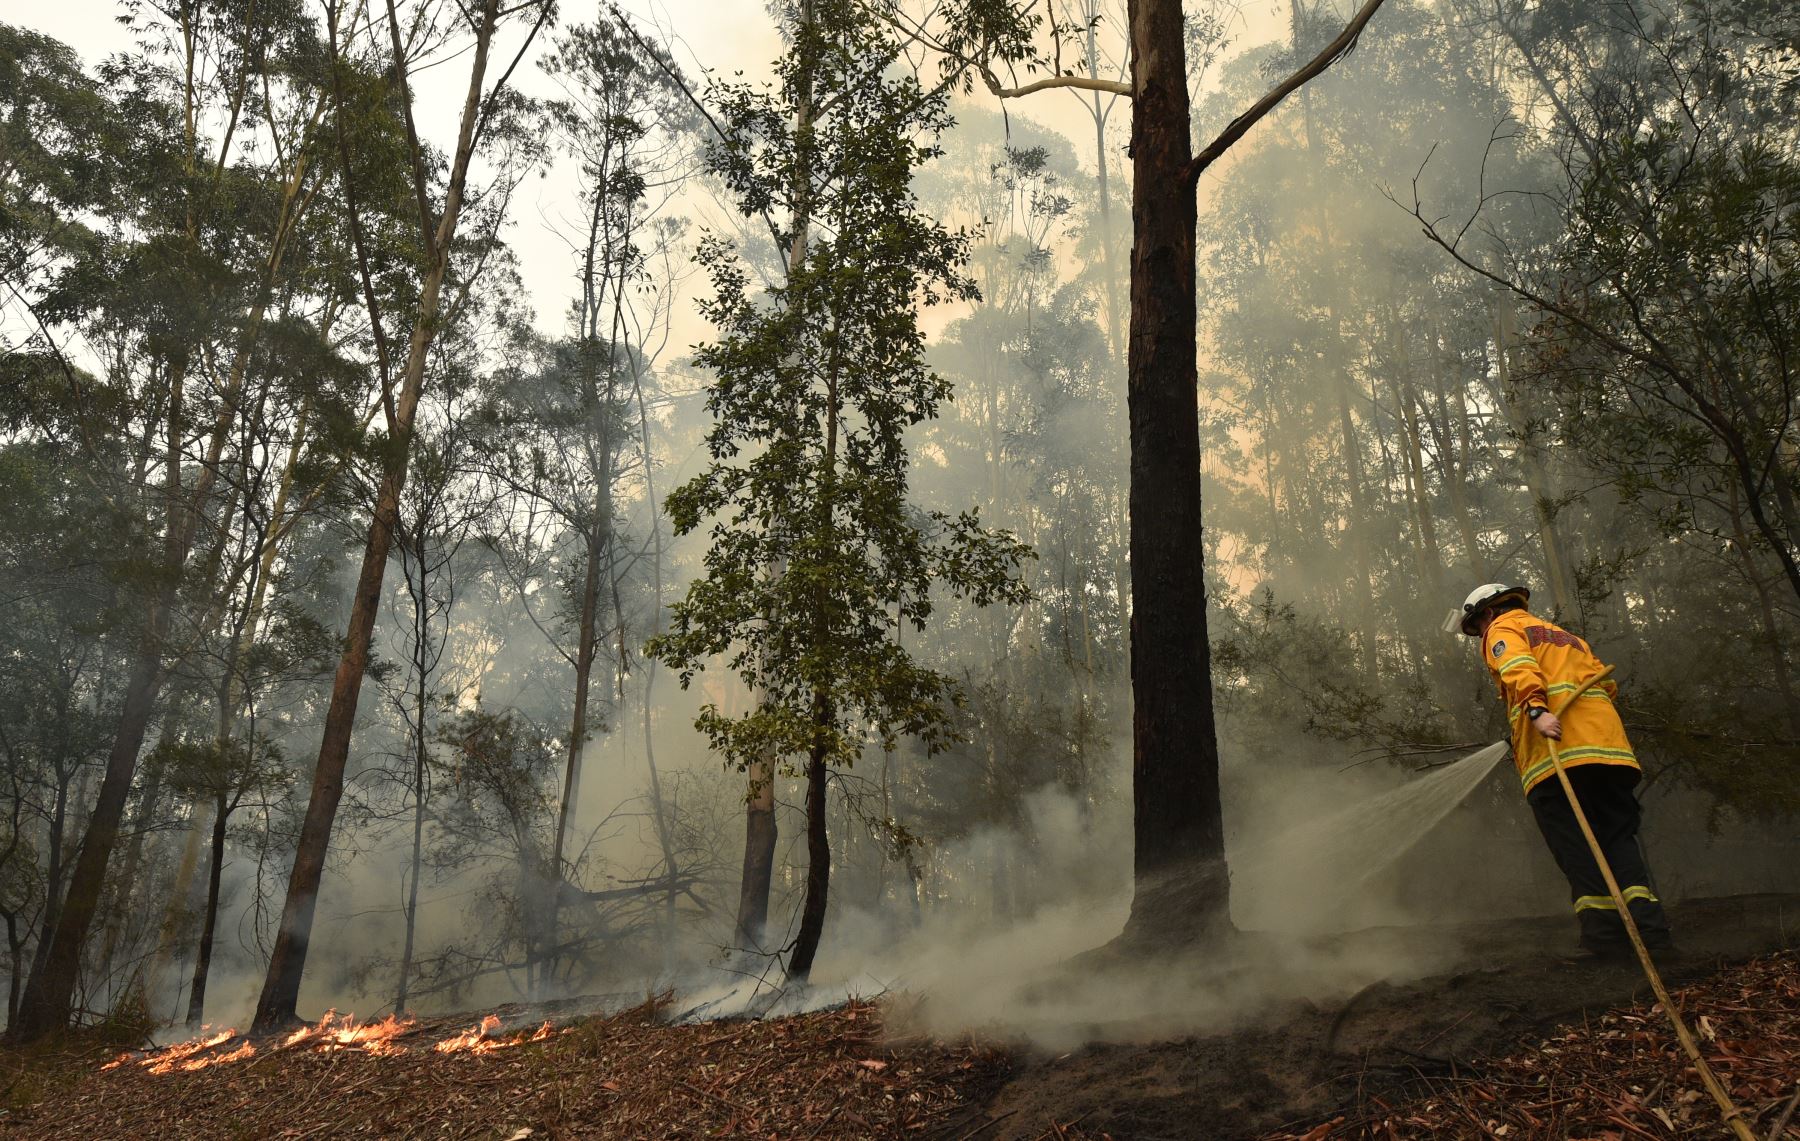 Un bombero aborda un incendio forestal al sur de Nowra, los incendios forestales catastróficos que causaron "daños extensos" en franjas del país.
Foto: AFP